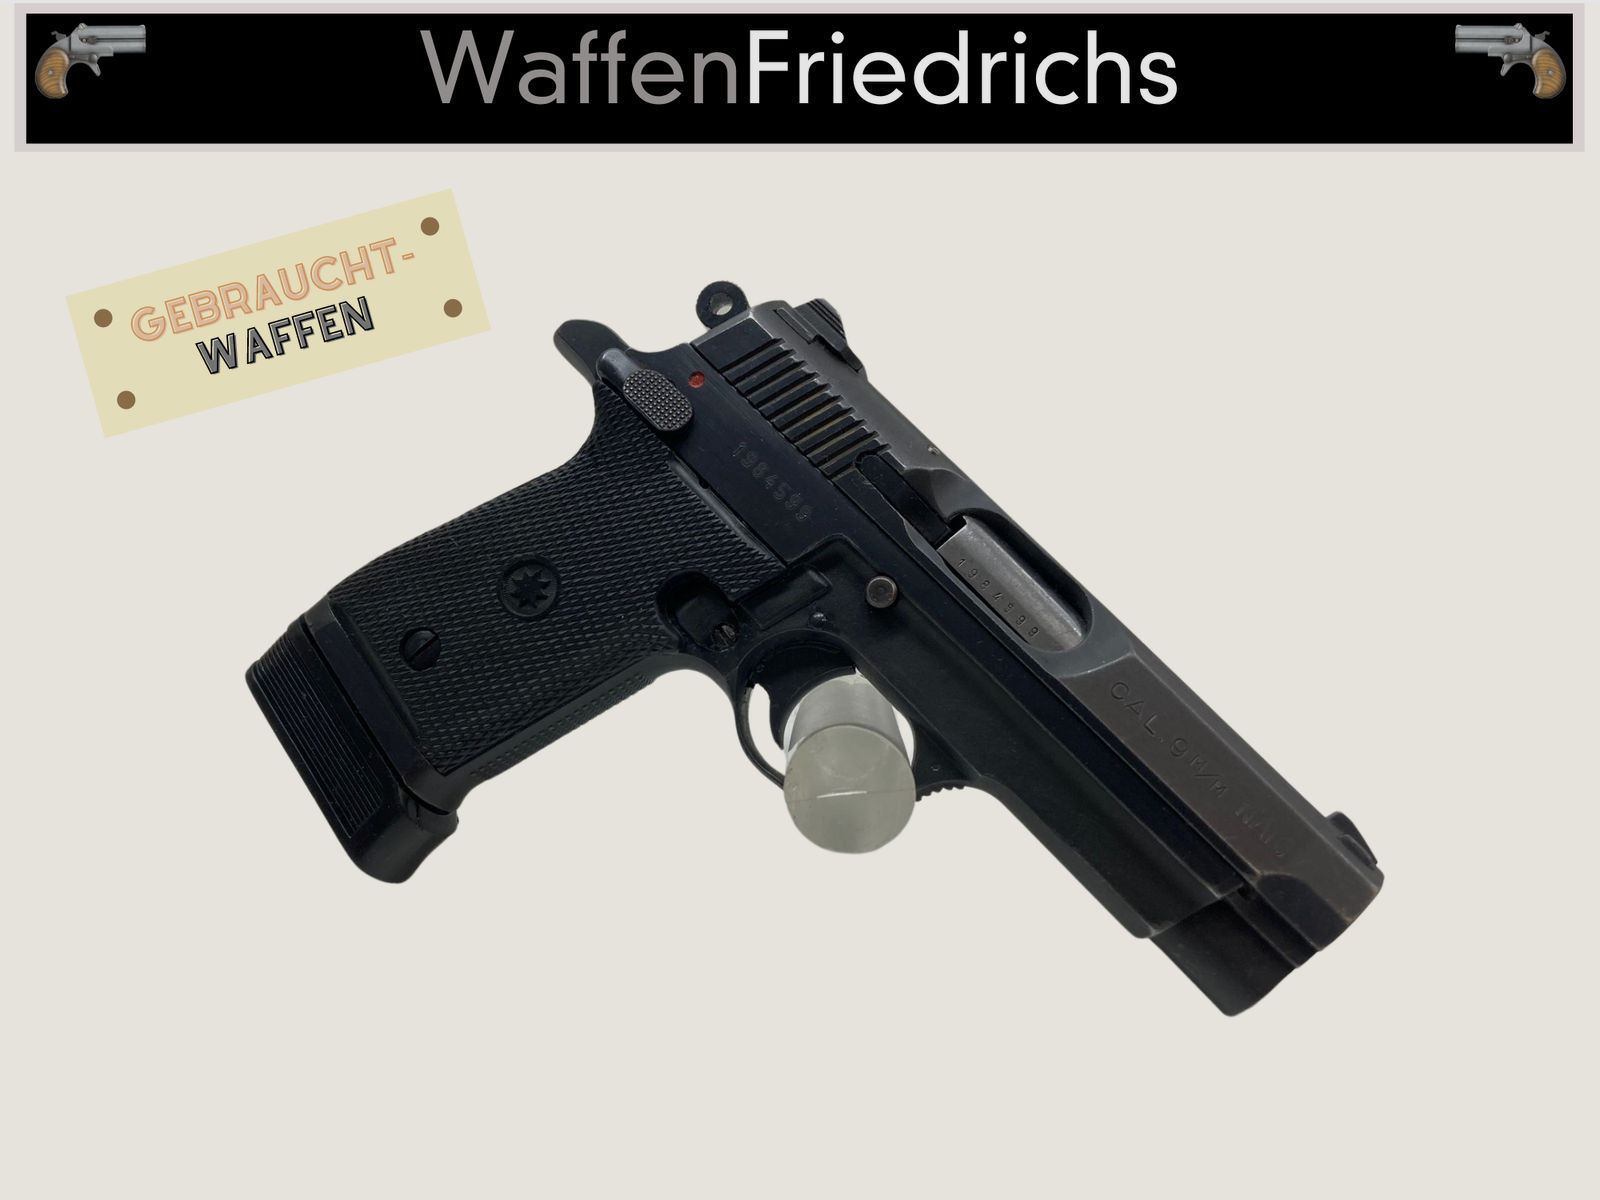 STAR M-43 Firestar - Waffen Friedrichs